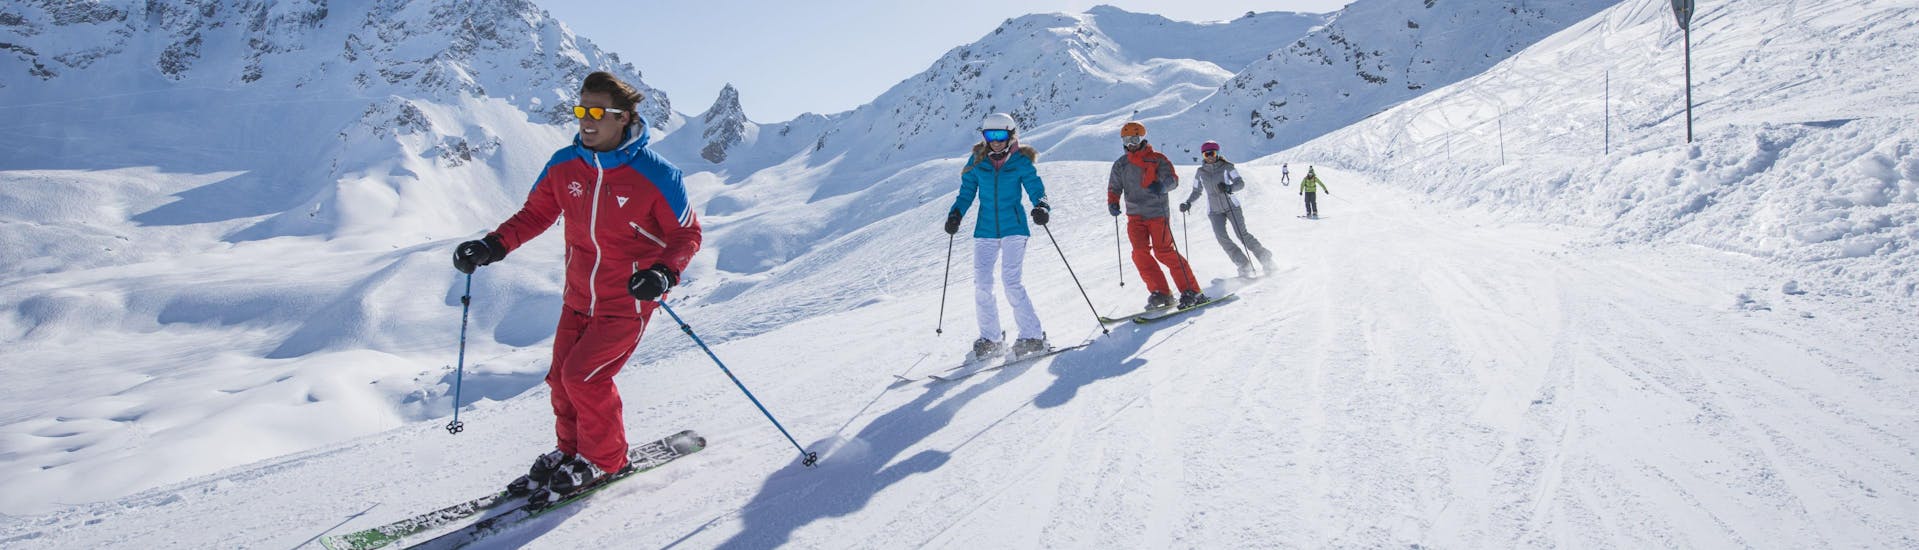 Un groupe de skieurs profite d'une journée sur les pistes de la station de ski de Courchevel 1550 où les écoles de ski proposent leurs cours de ski.